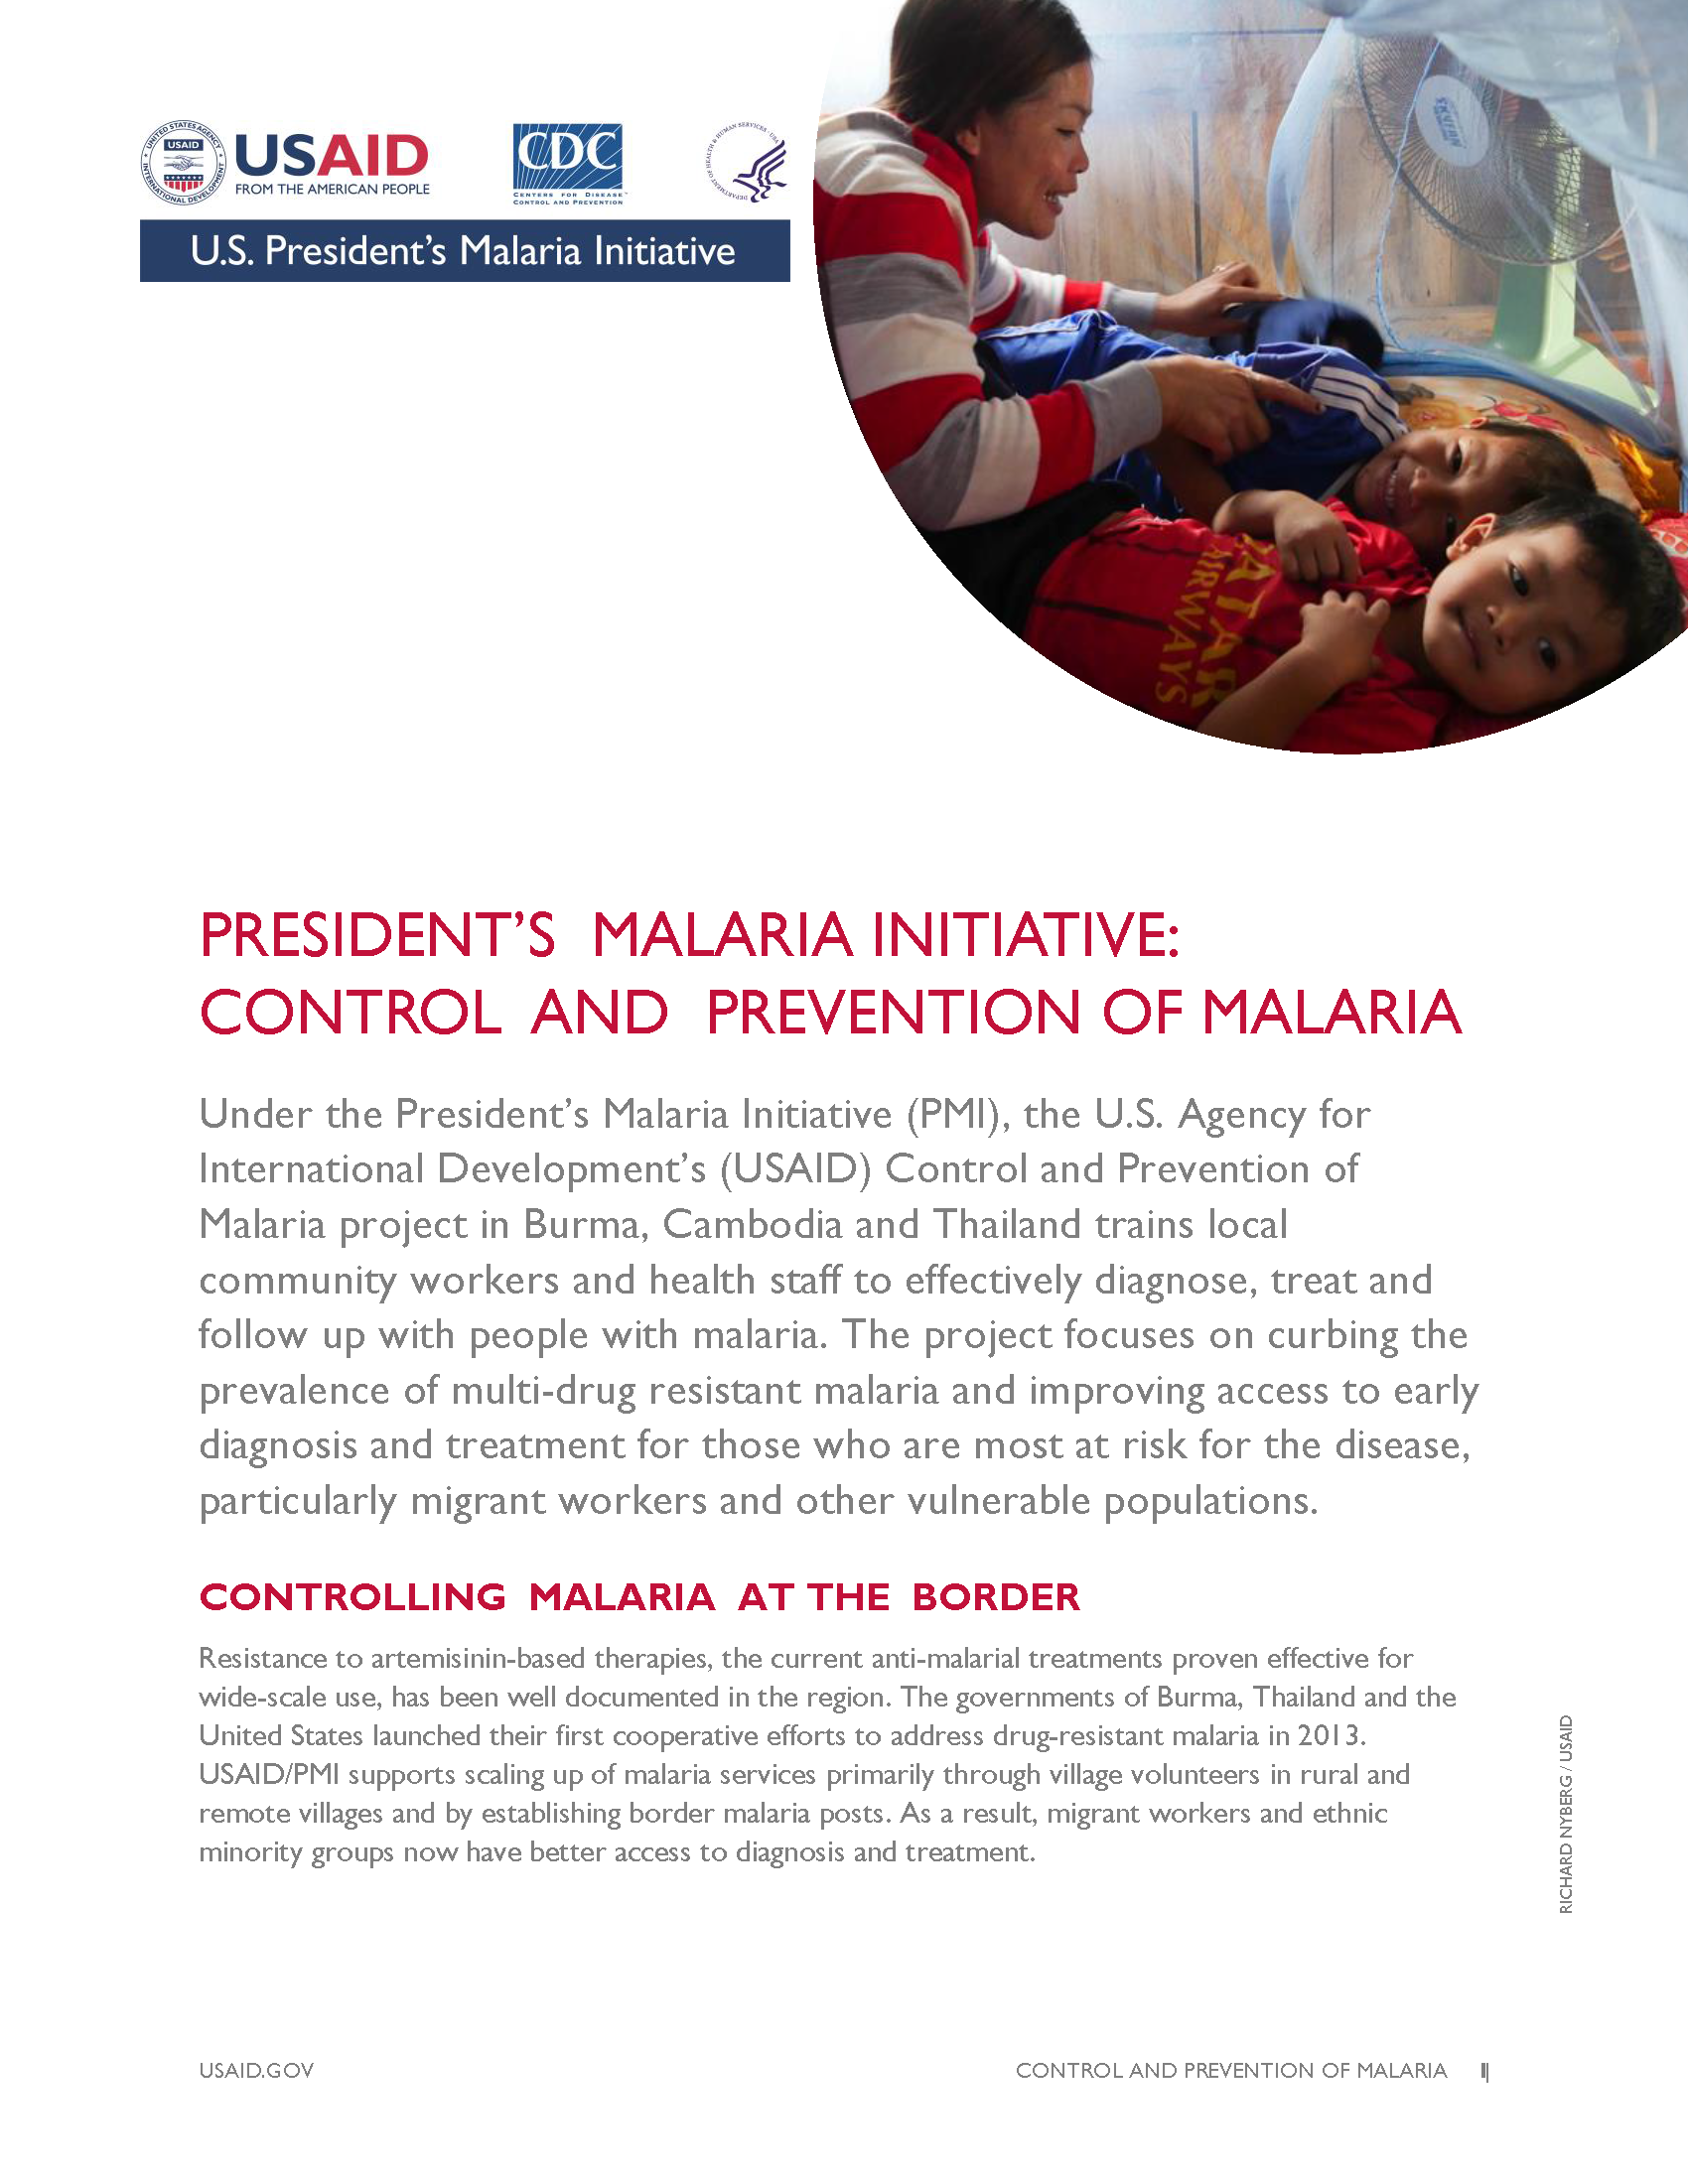 President’s Malaria Initiative: Control and Prevention of Malaria